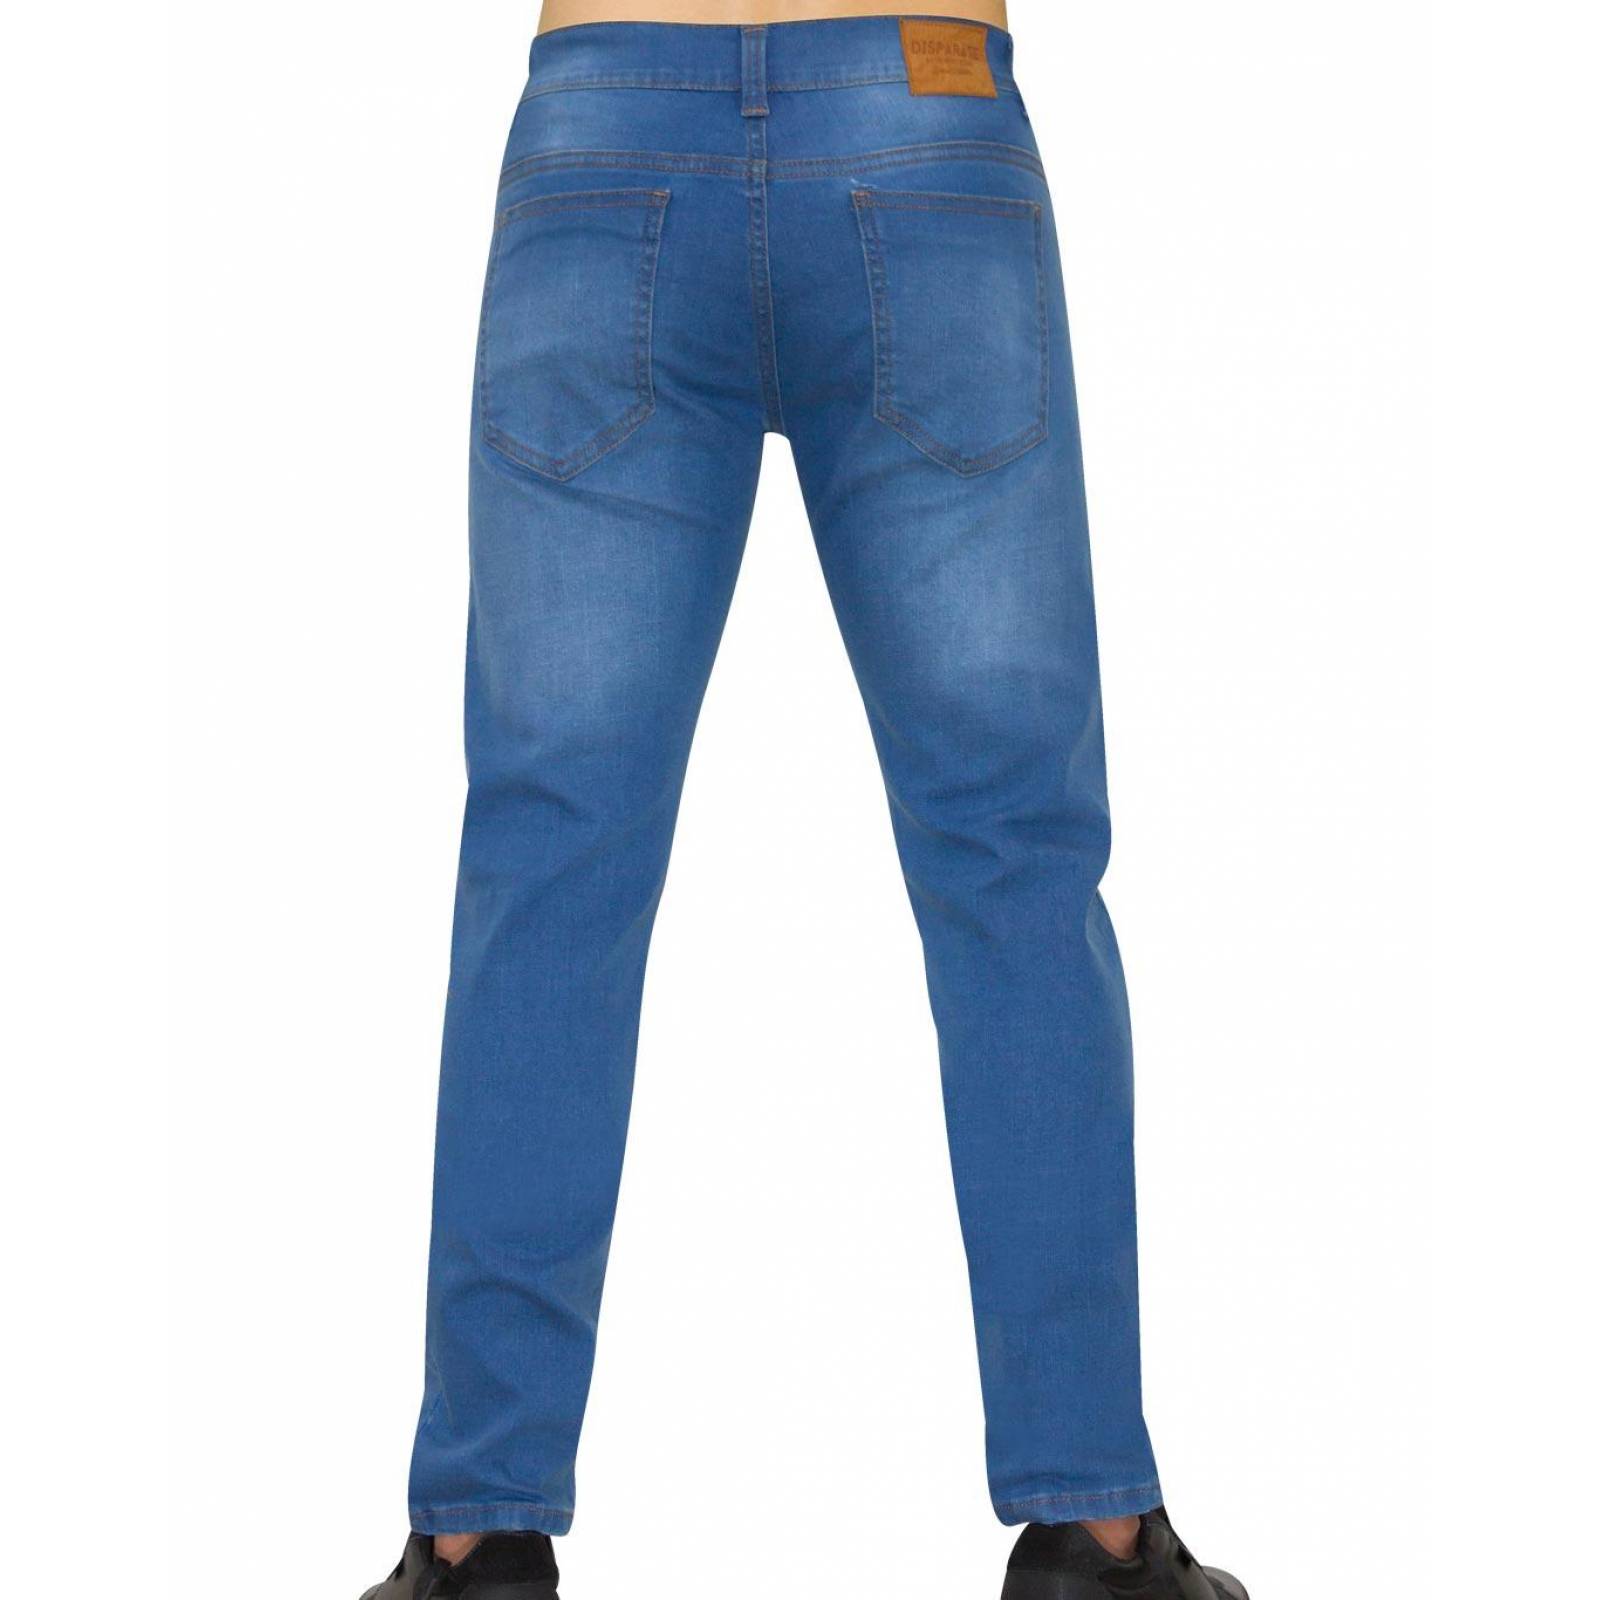 Jeans Básico Hombre Salvaje Tentación Stone 63103405 Mezclilla Stretch 